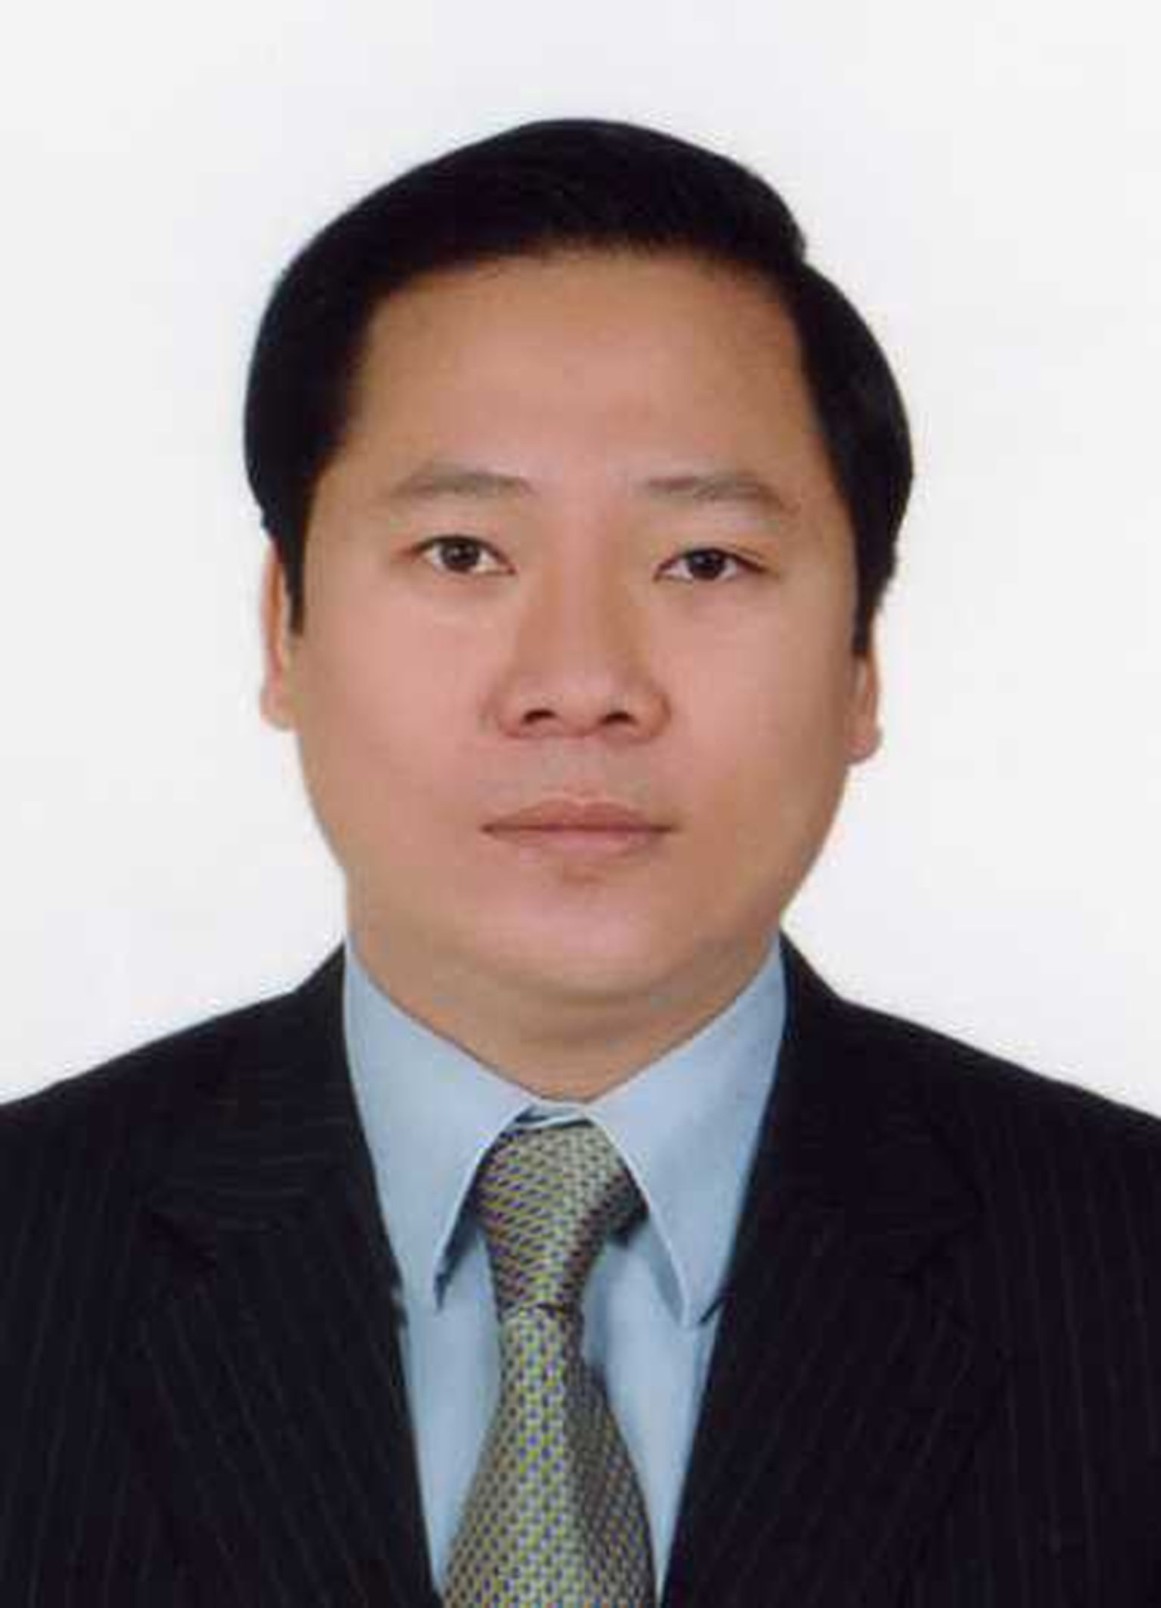 Đồng chí Nguyễn Phi Long - Ủy viên dự khuyết BCH Trung ương ĐCSVN - Bí thư tỉnh ủy Hòa Bình